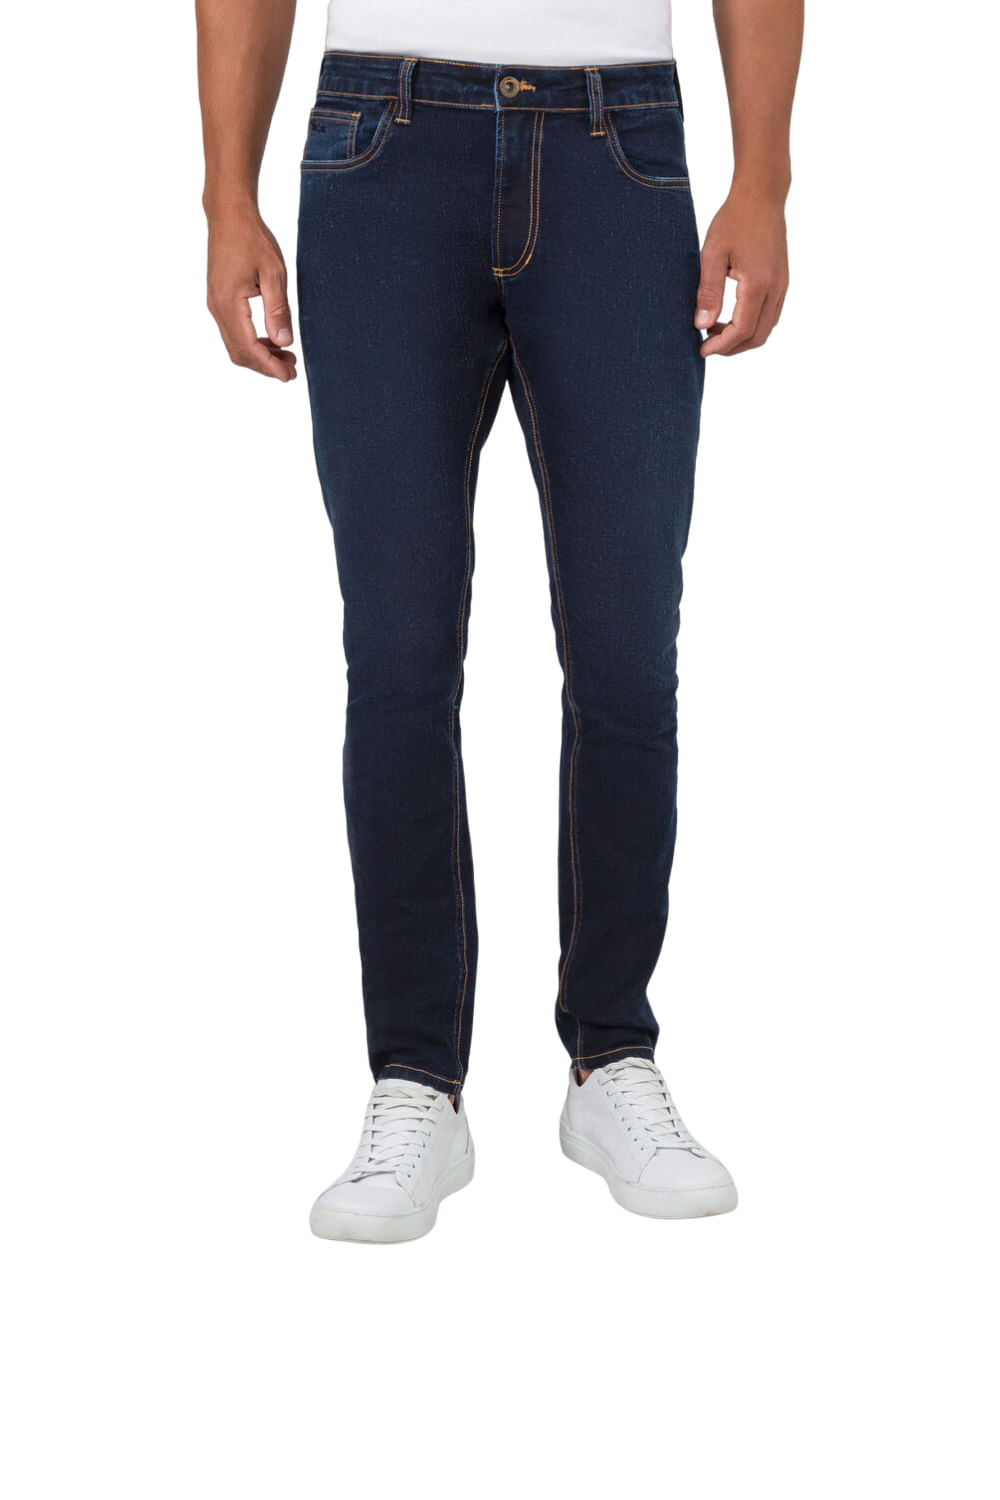 Calça Jeans Skinny Preta Cintura Alta - Hangar do Jeans